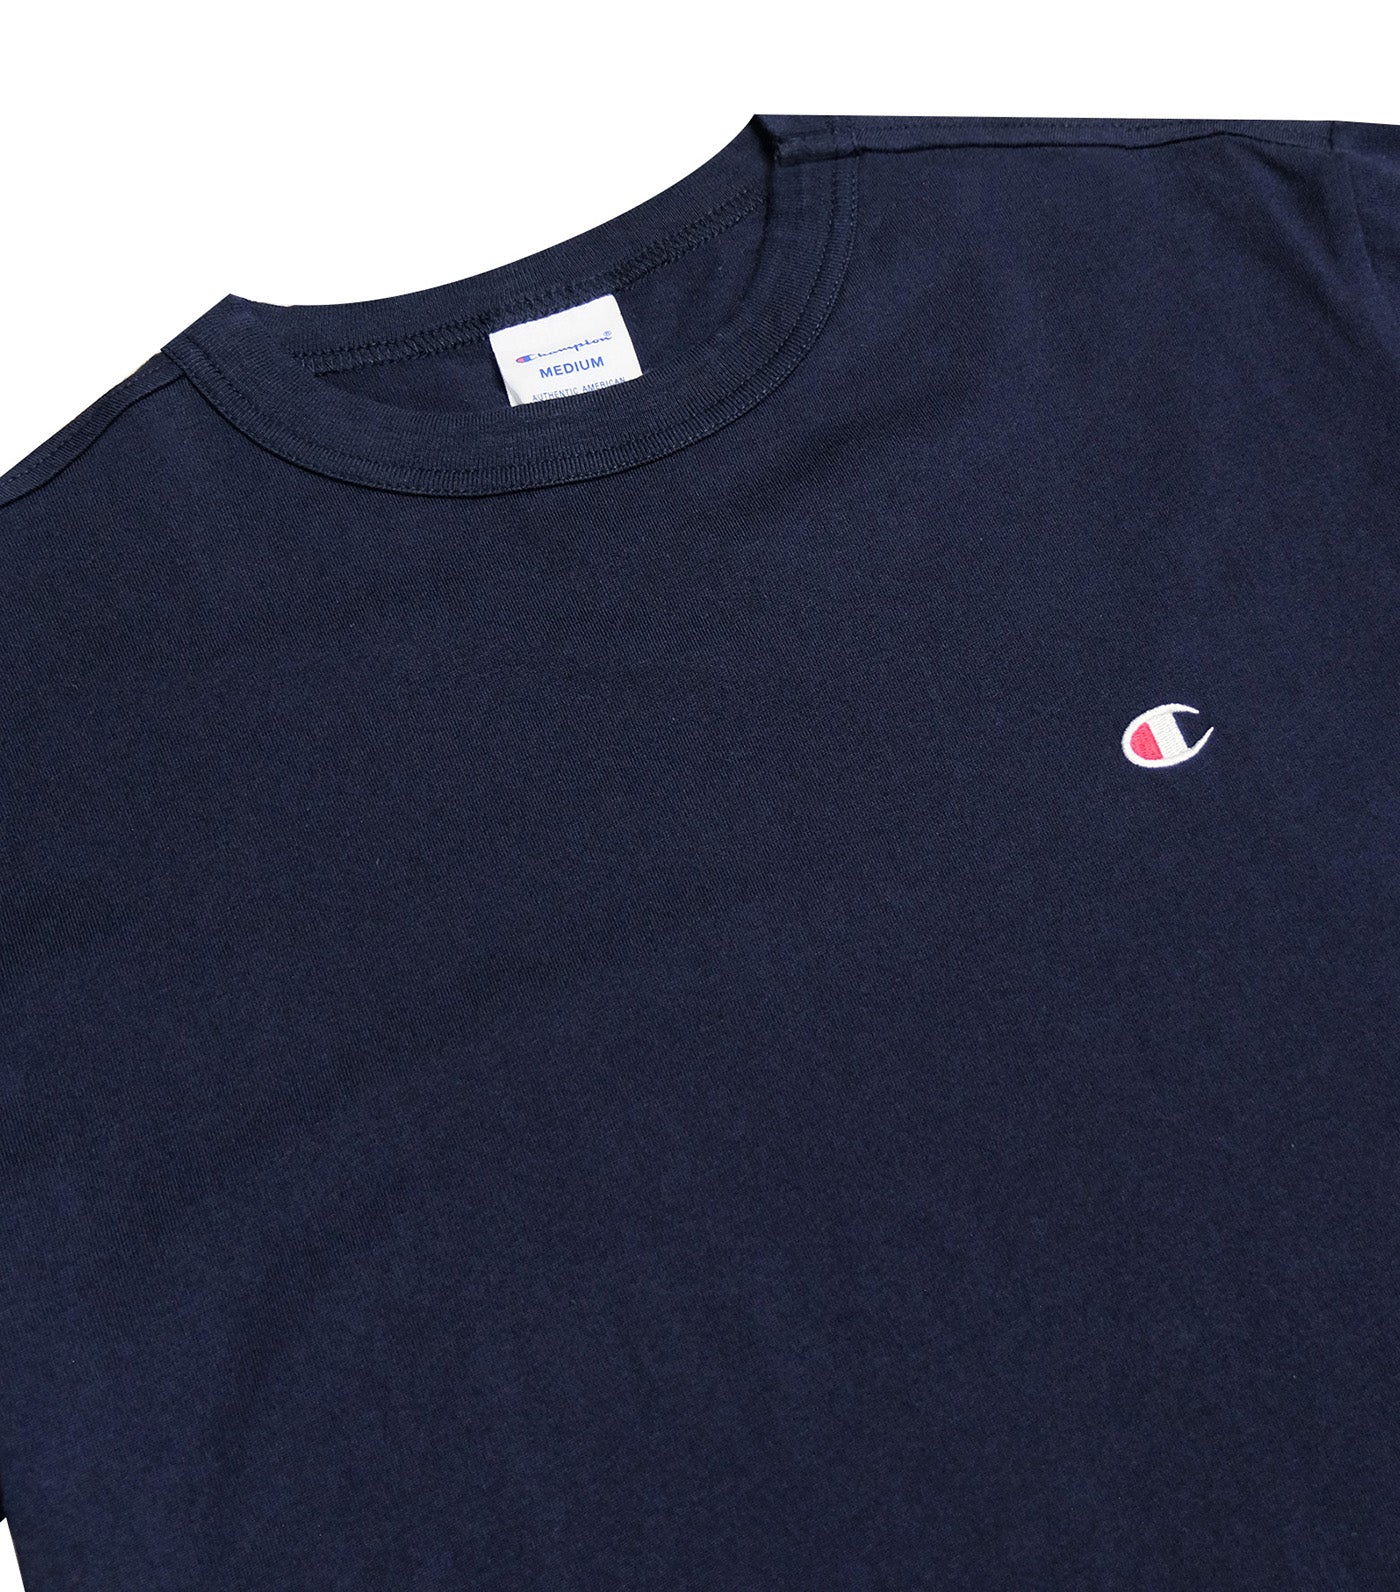 Japan Line Short Sleeve T-Shirt Navy